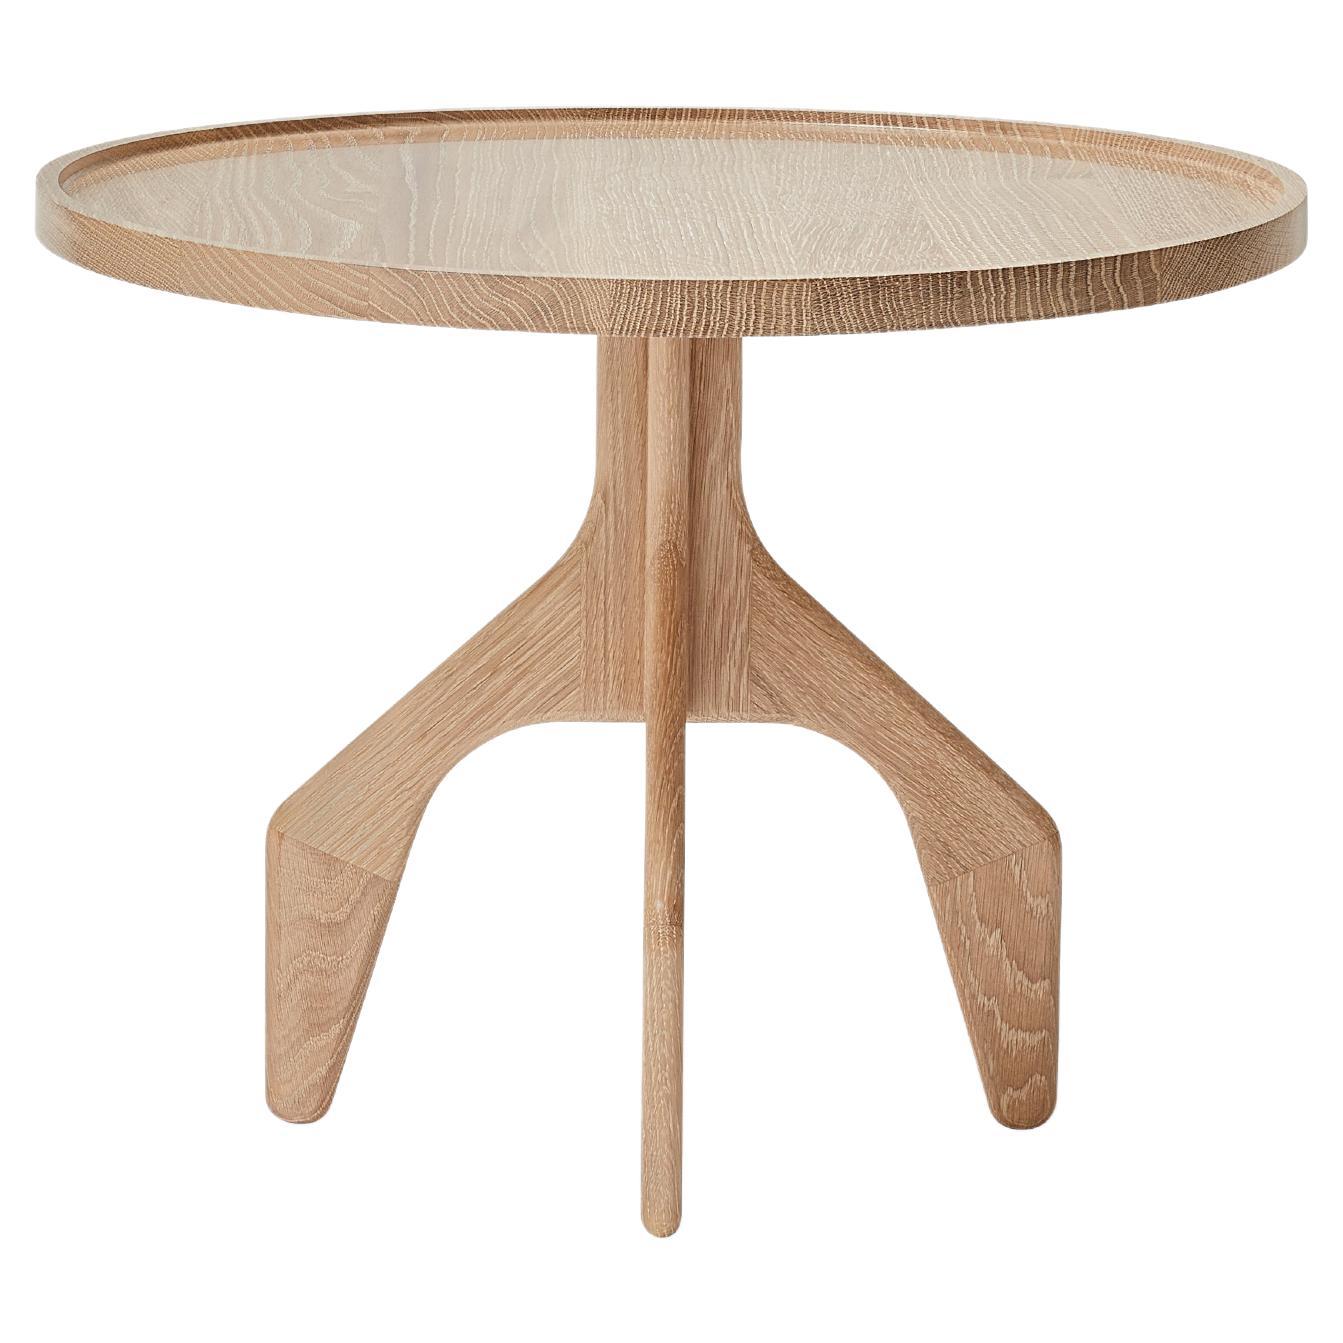 MG205 side table in oak by Malte Gormsen Designed by Space Copenhagen For Sale